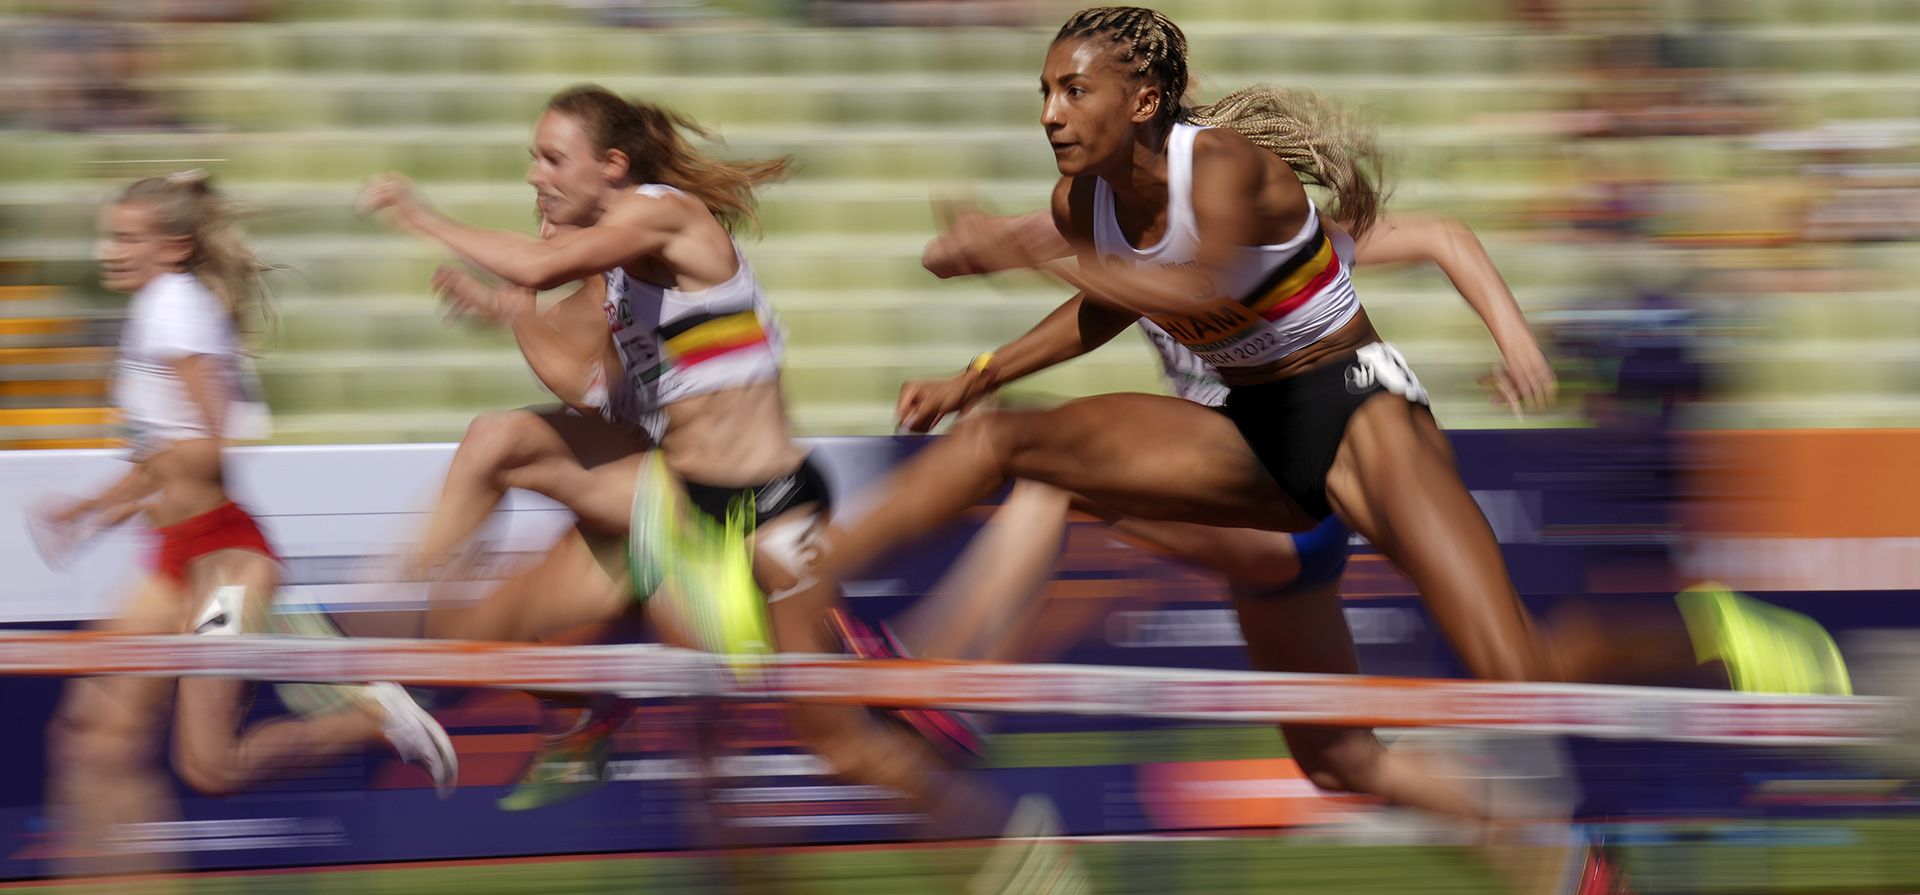 Nafissatou Thiam, de Bélgica, compite en una serie de heptatlón femenino de 100 metros con vallas durante la competencia de atletismo en el Estadio Olímpico de la Eurocopa en Múnich, Alemania, el miércoles 17 de agosto de 2022.